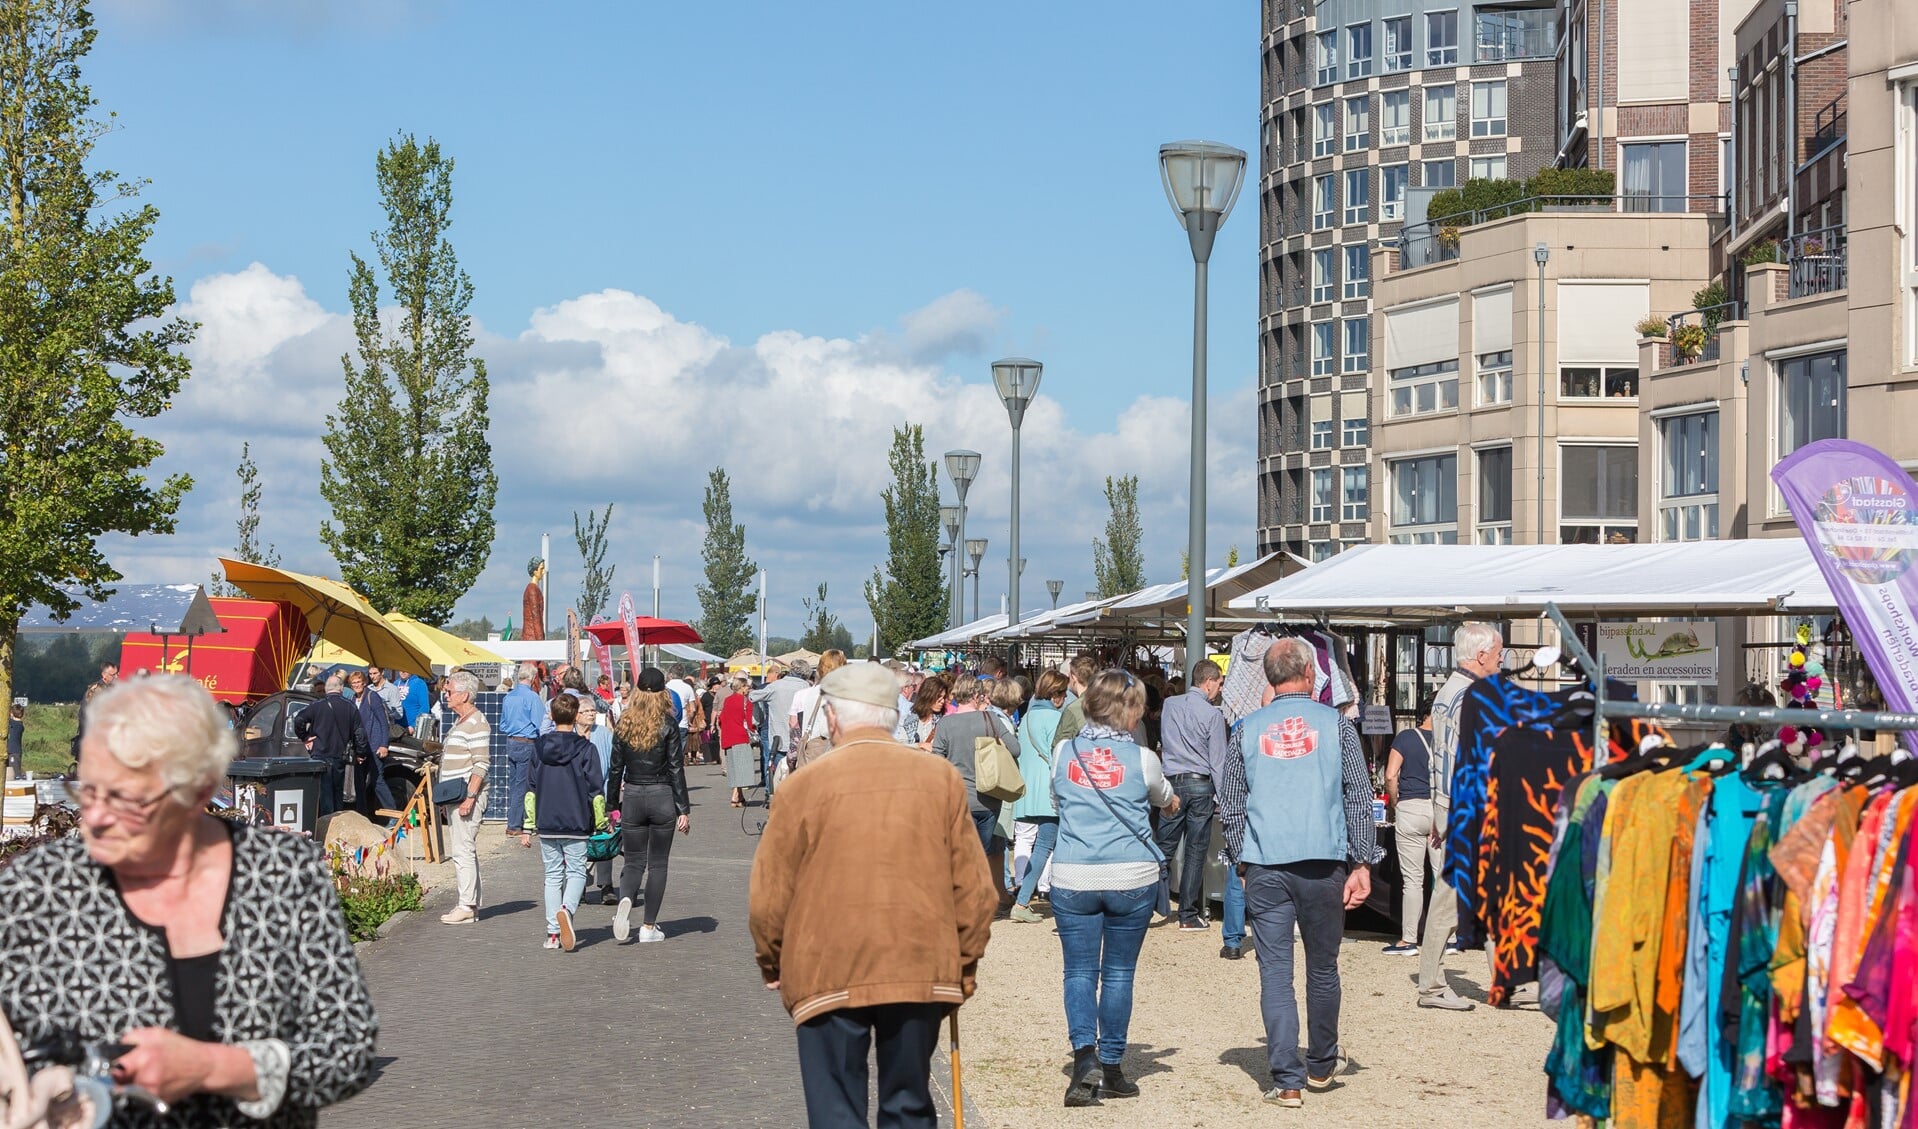 DoesburgseKadedagen biedt circa 100 kramen met streekproducten, kunst en creatieve artikelen. Foto: PR